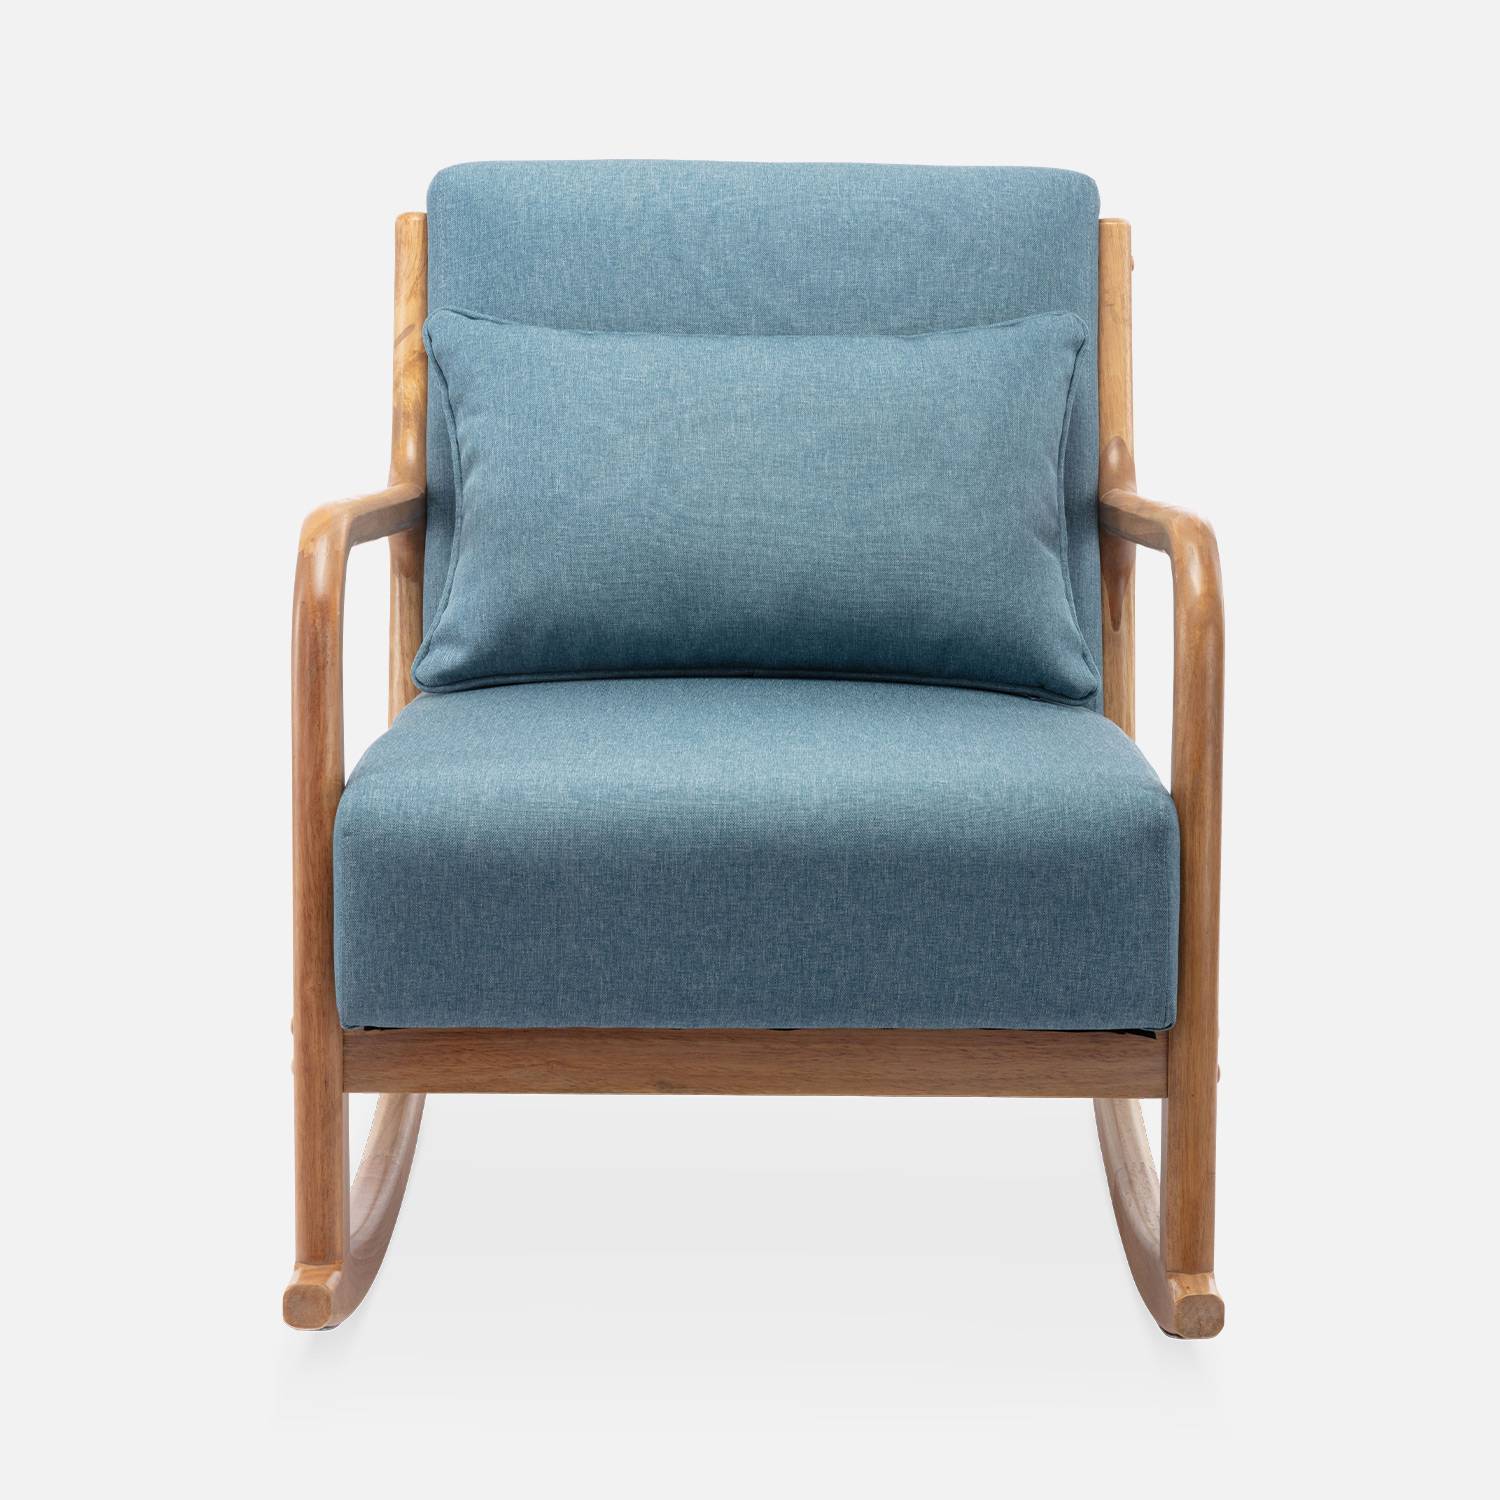 Cadeira de baloiço de design em madeira e tecido, 1 lugar, cadeira de baloiço escandinava, azul Photo4